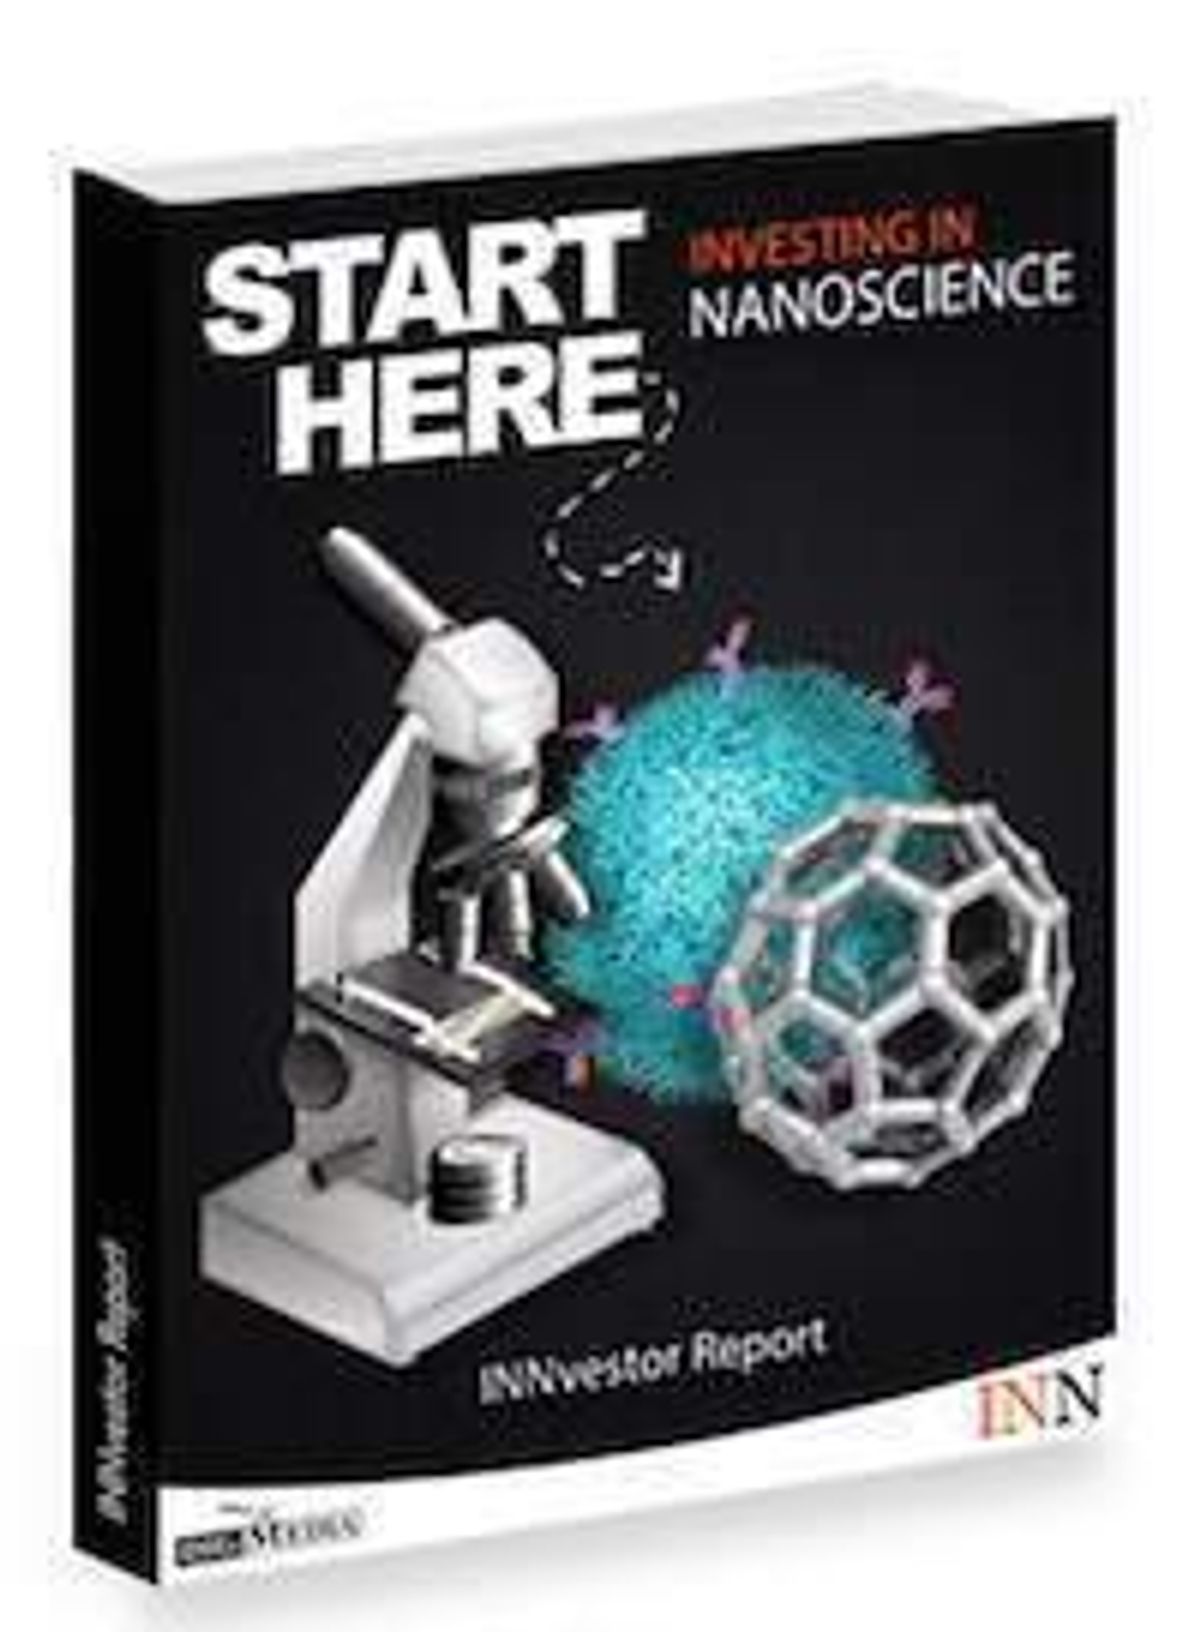 Image of nanotechnology report.